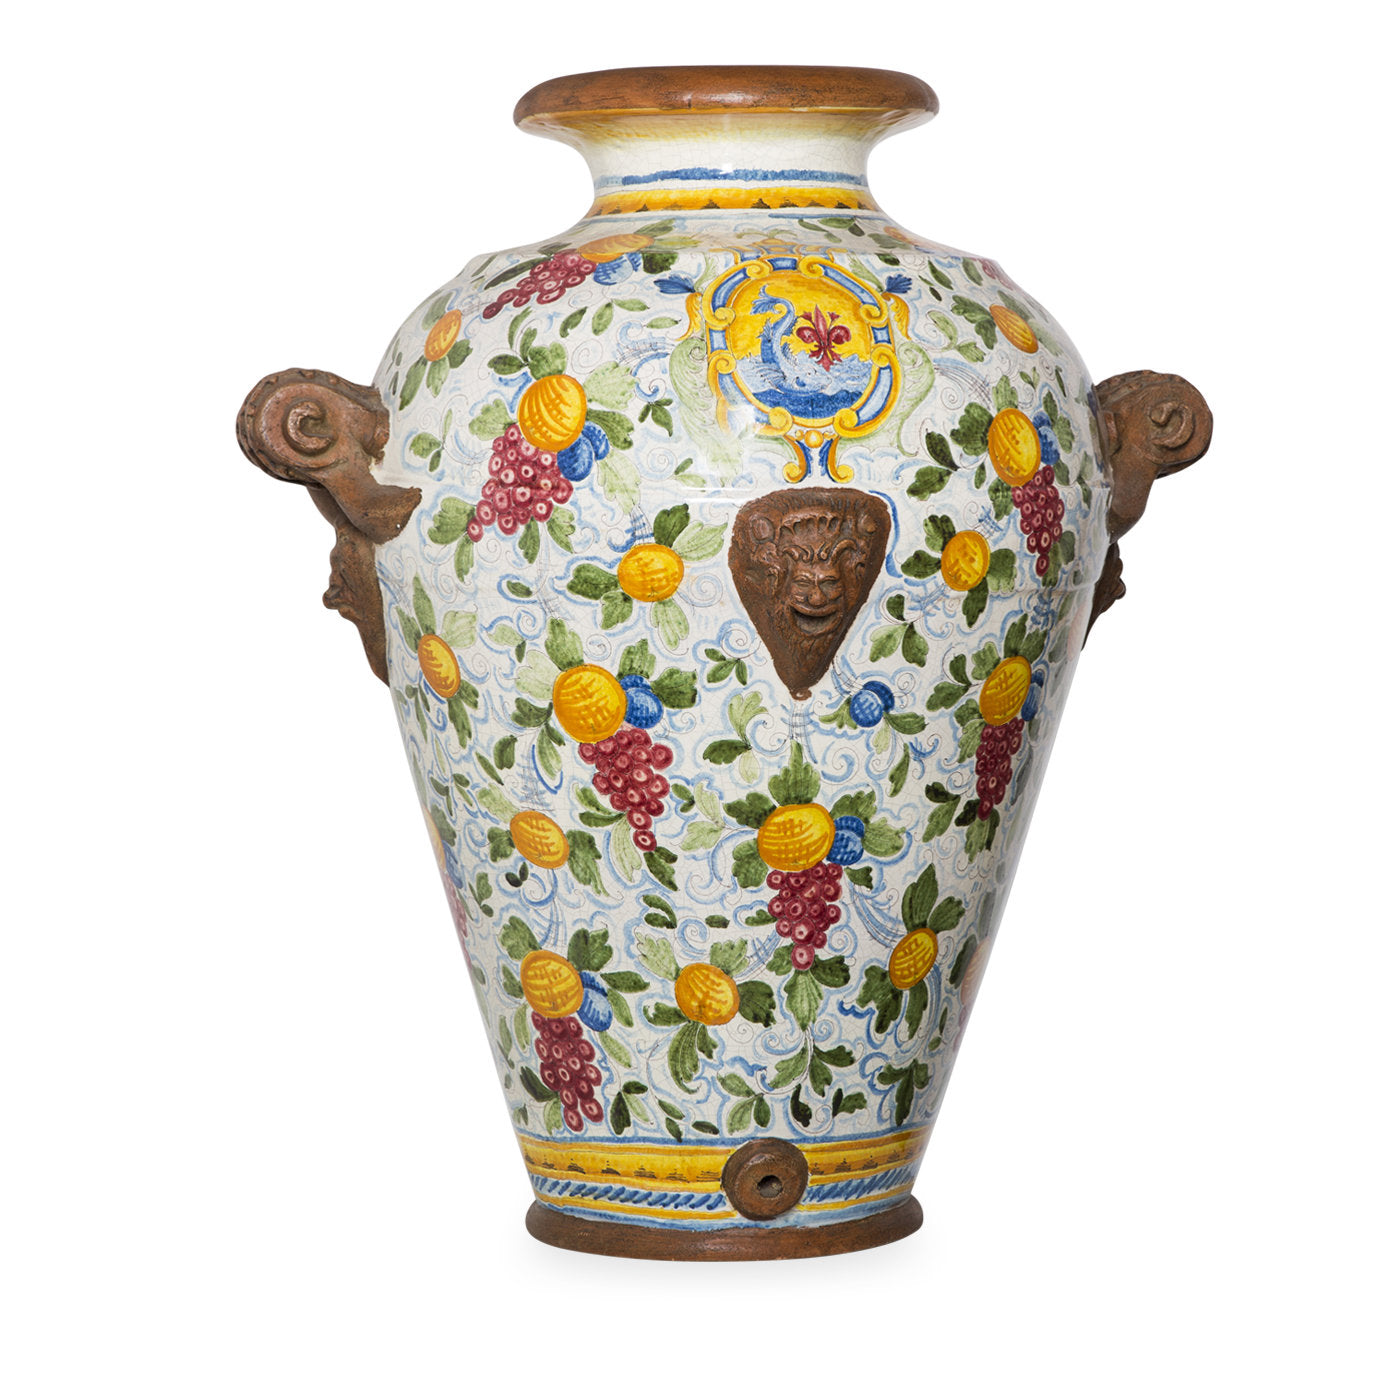 Faenza Large Ceramic Vase - Main view